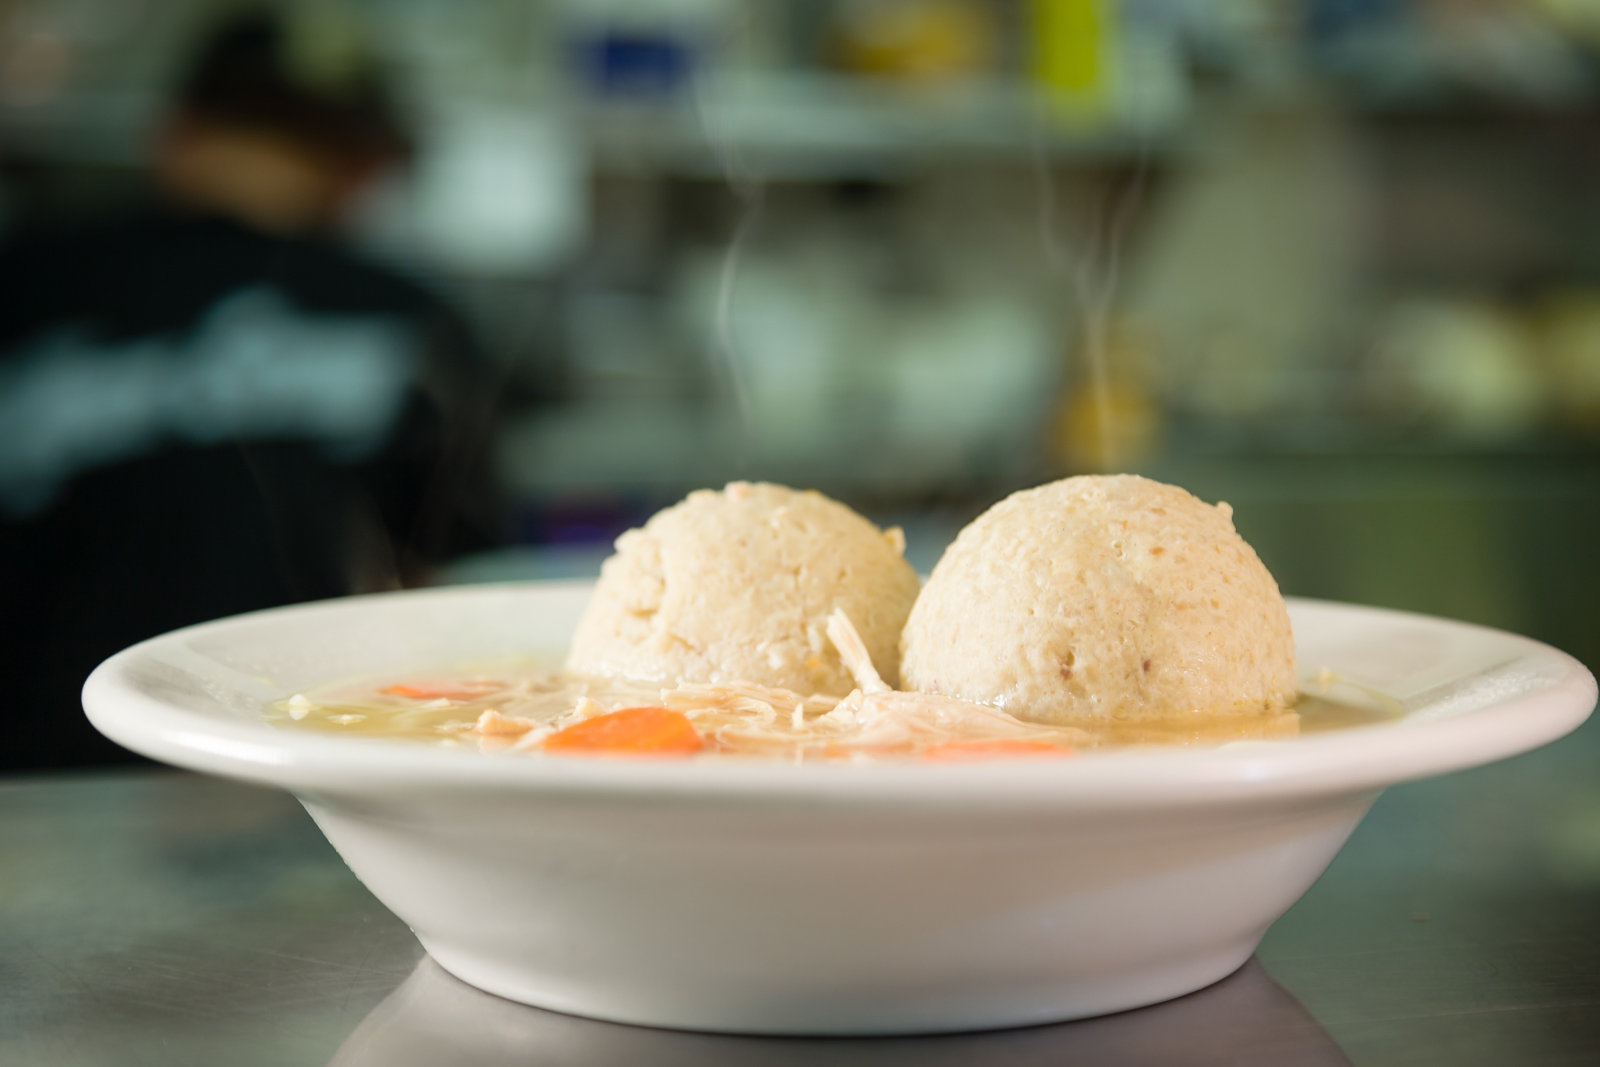 The Bagel Deli's Matzo Ball Soup